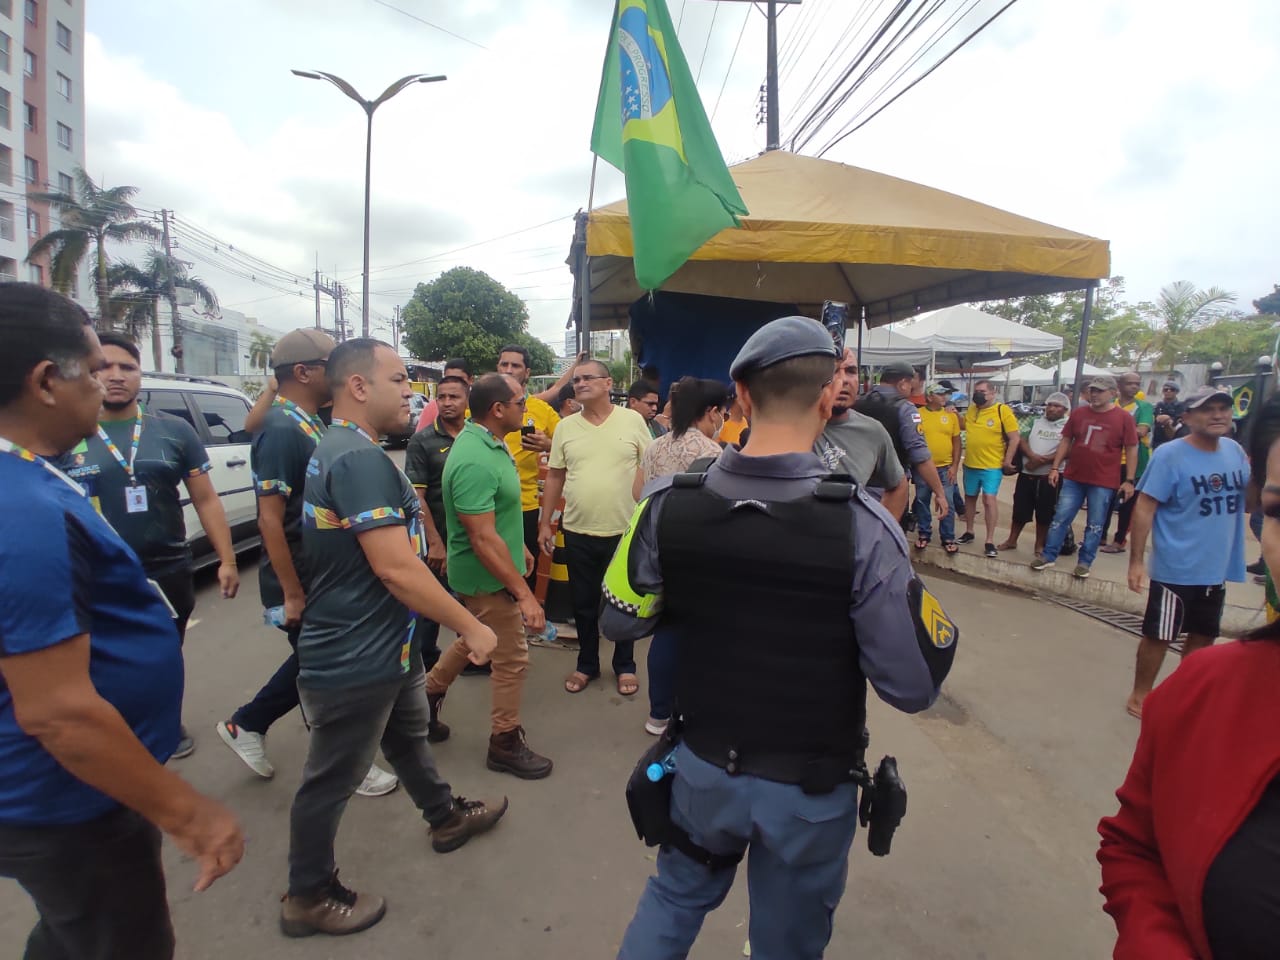 Órgãos de segurança tentaram dispersar atos em frente ao CMA, em Manaus, mas manifestação continua - Foto: Daniel Melo/TV Norte AM